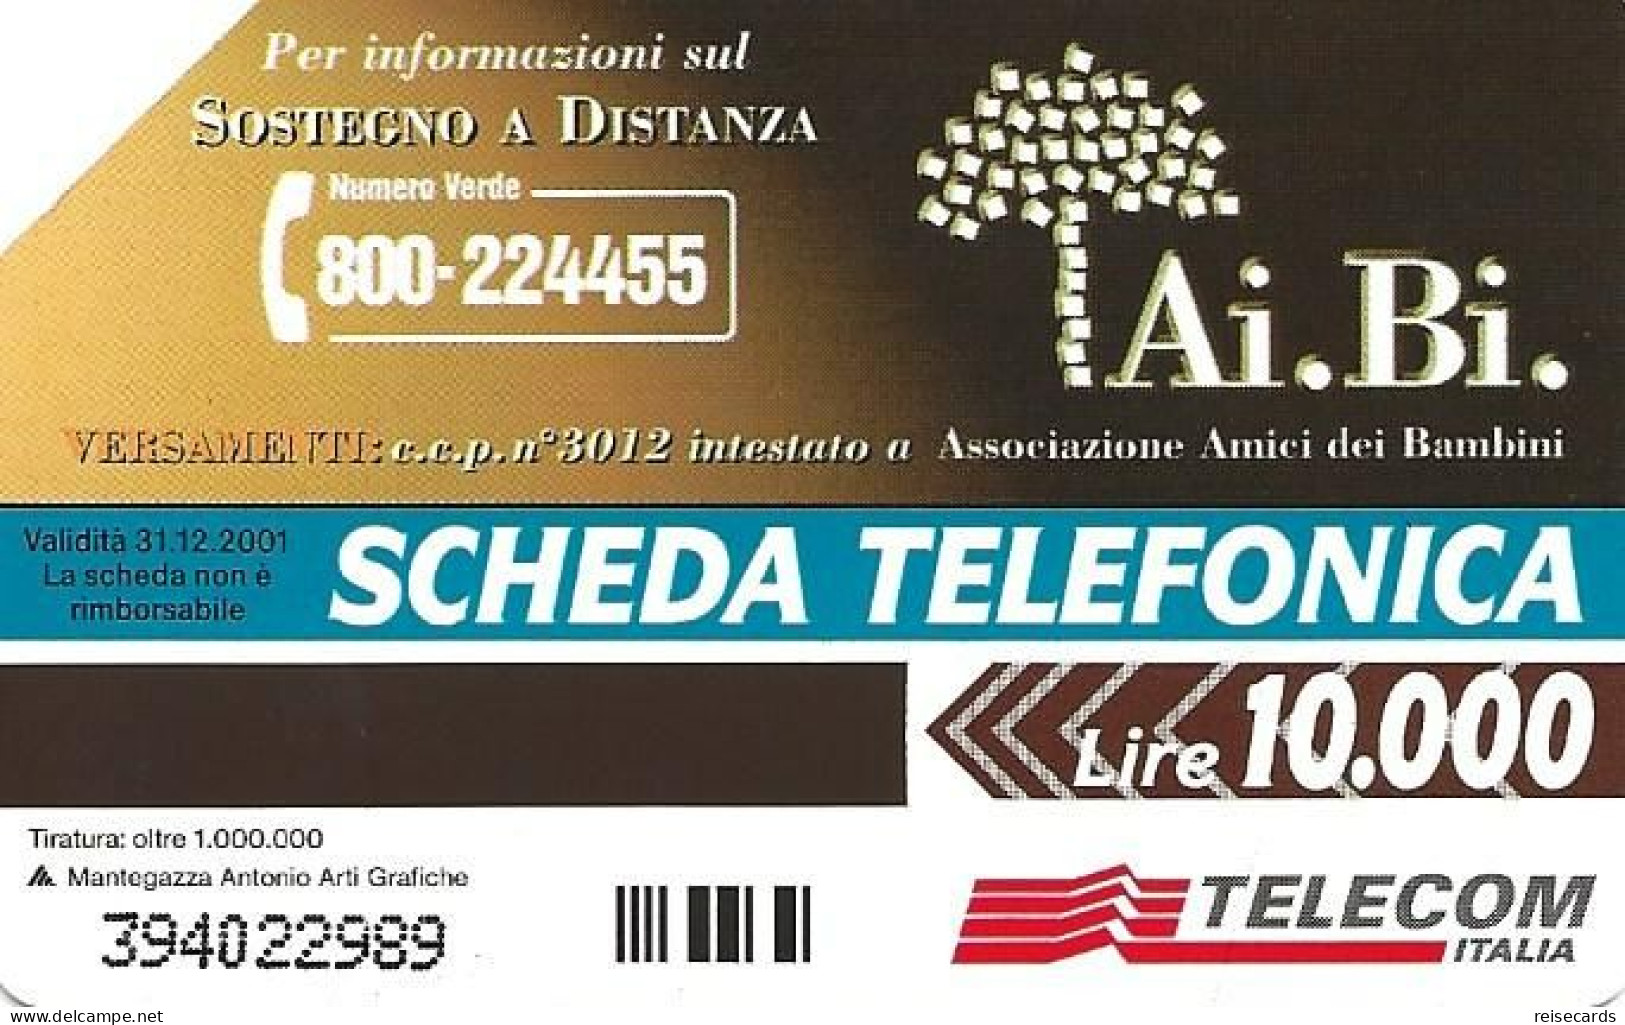 Italy: Telecom Italia - Ai.Bi. Associazione Amici Dei Bambini - Öff. Werbe-TK